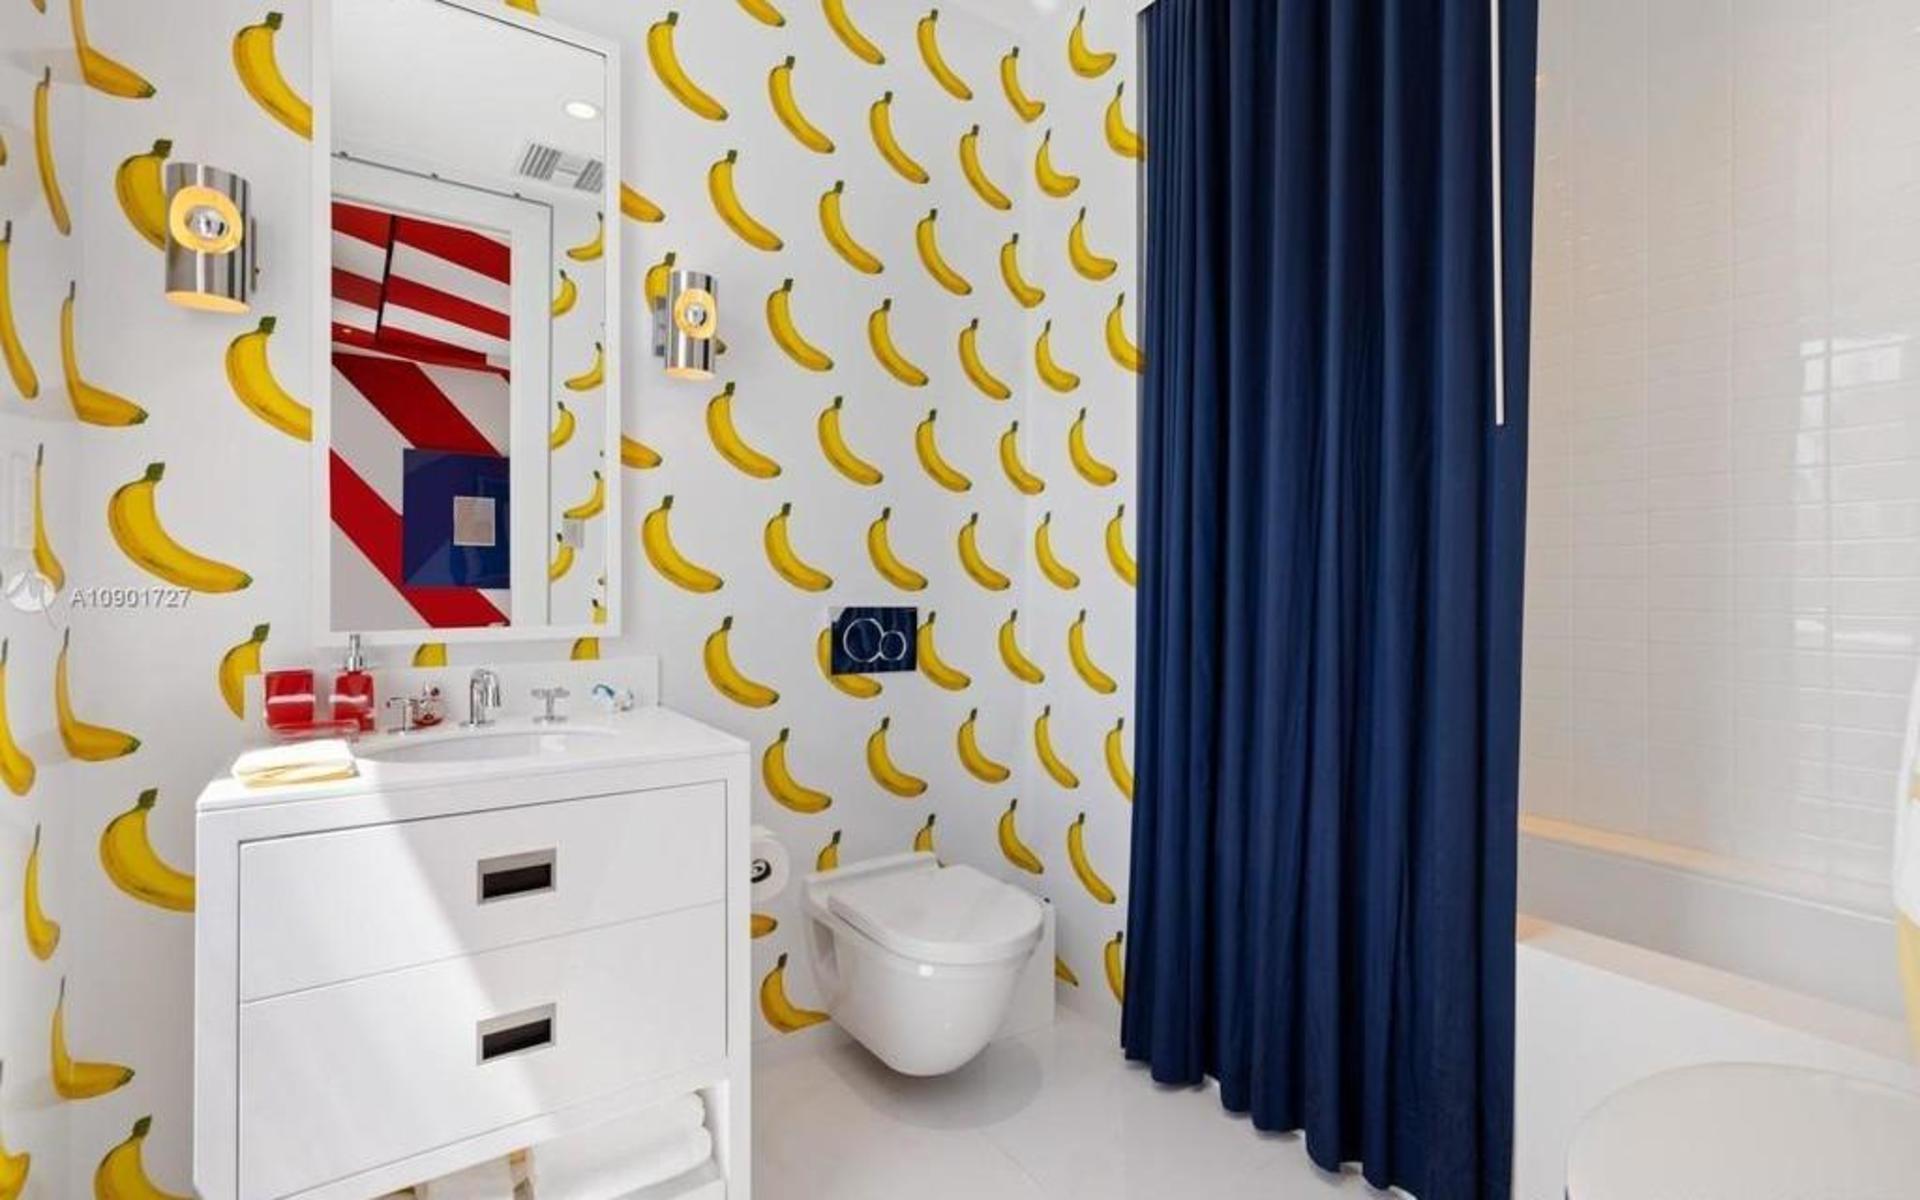 Att tapetsera badrummet med banantapeter känns ovanligt men kul